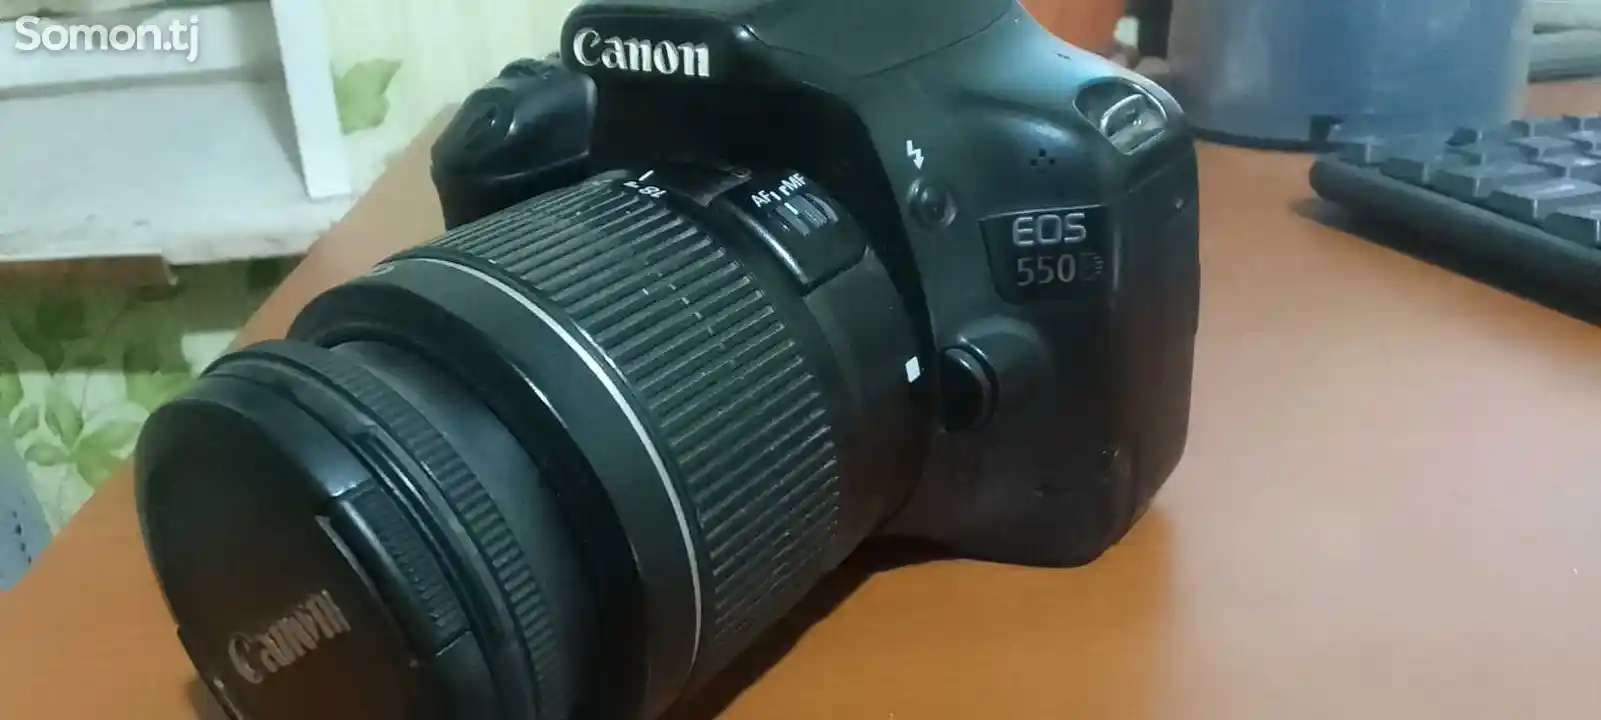 Фотоаппарат Canon 550D obektiv 35&300-2